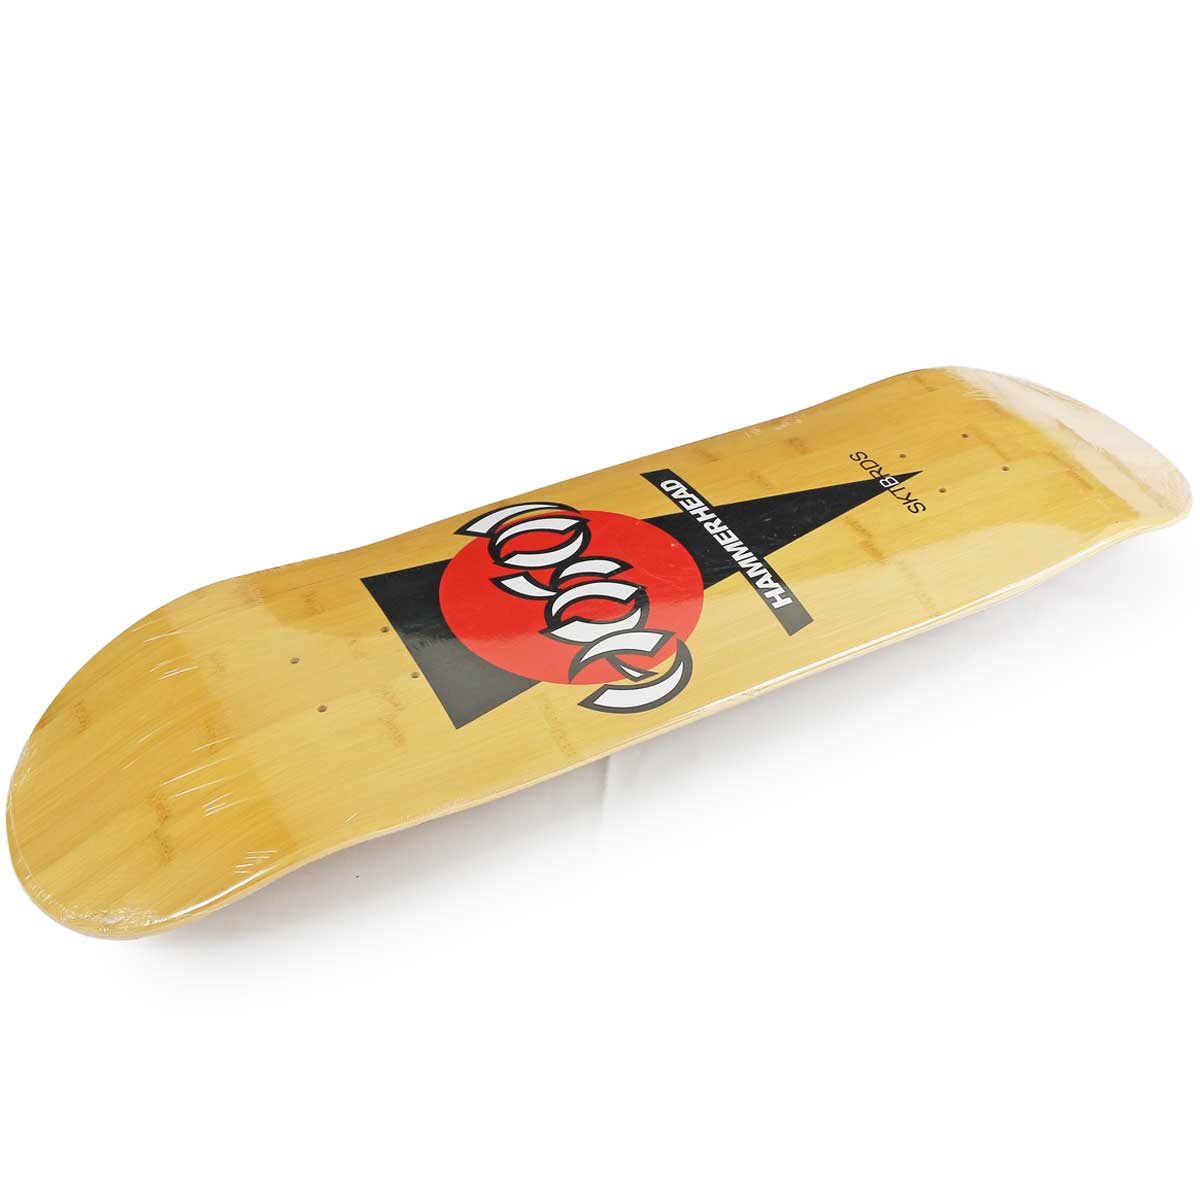 ホソイ 8.5インチ スケボー デッキ Hosoi Skateboards Pro Hosoi Hammerhead Bamboo Deck  スケートボード ブランド ハンマーヘッド スケボーデッキ ブランド